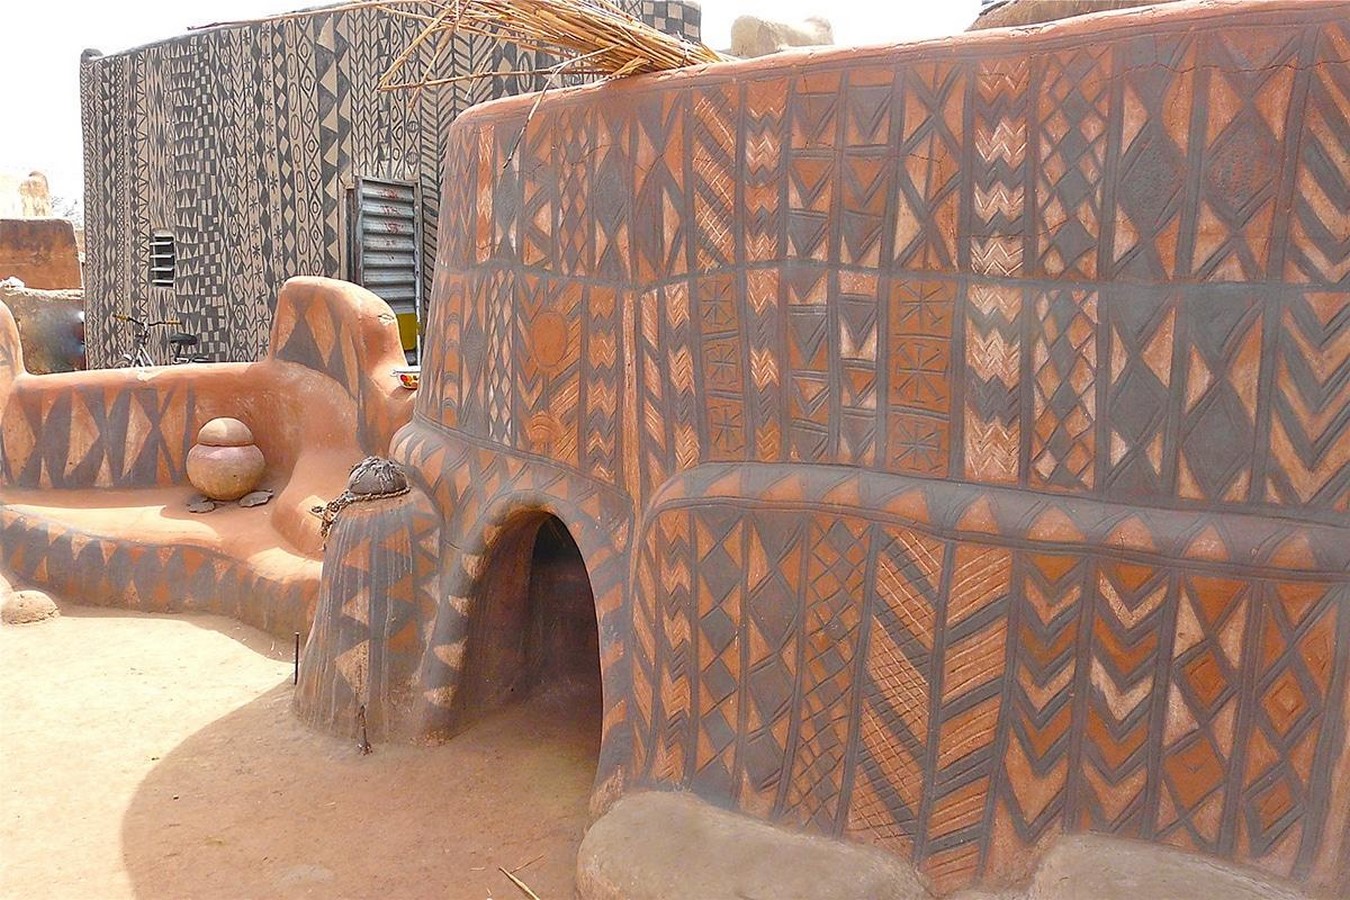 African architecture should stop copying the West- Francis Kéré  - Sheet2